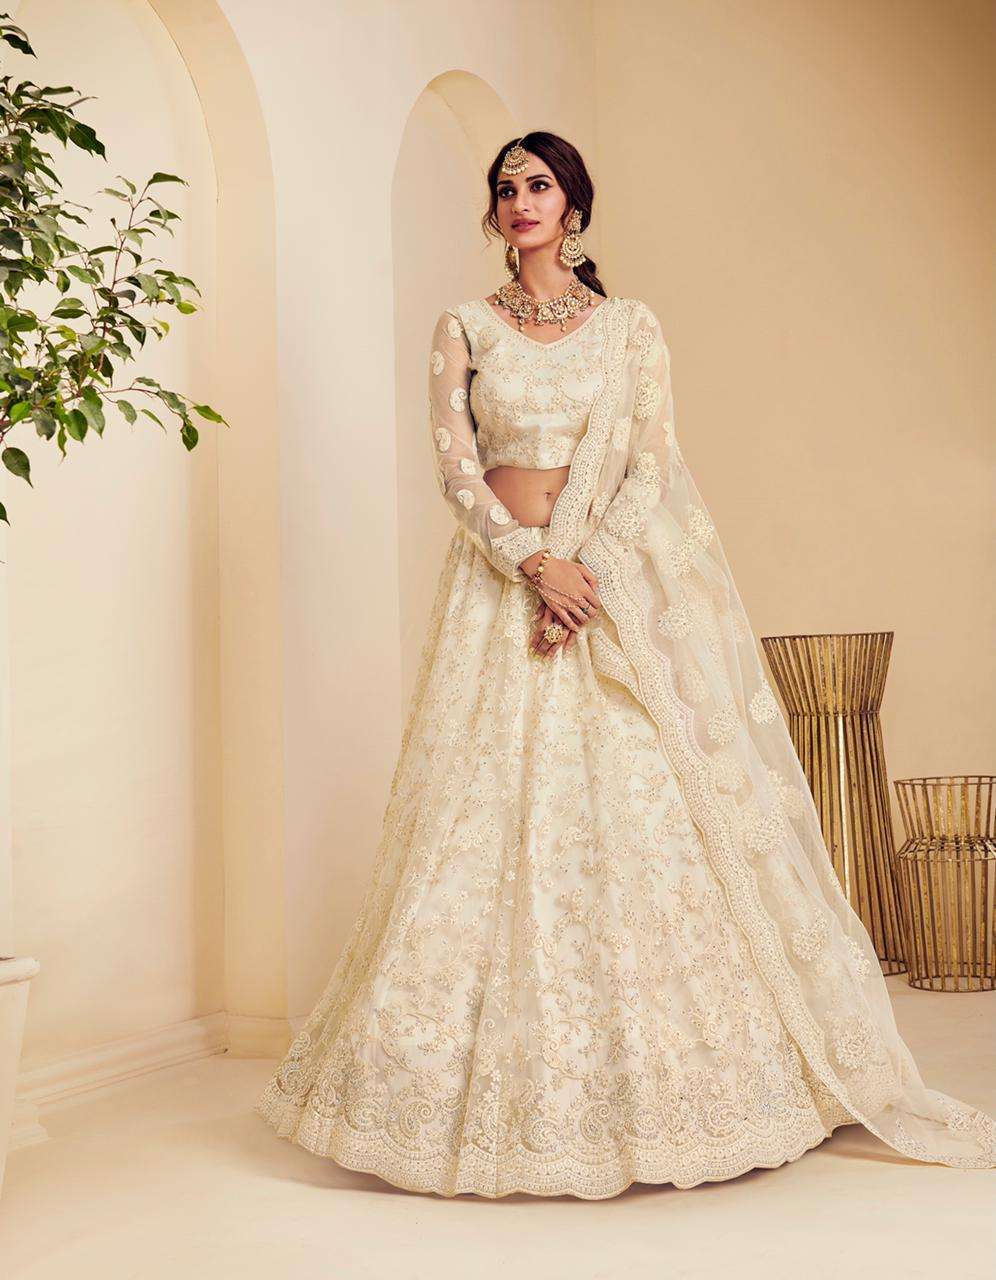 Pakistani Designer Indian Wear New Year Party Bollywood Wedding Lehenga  Choli | eBay